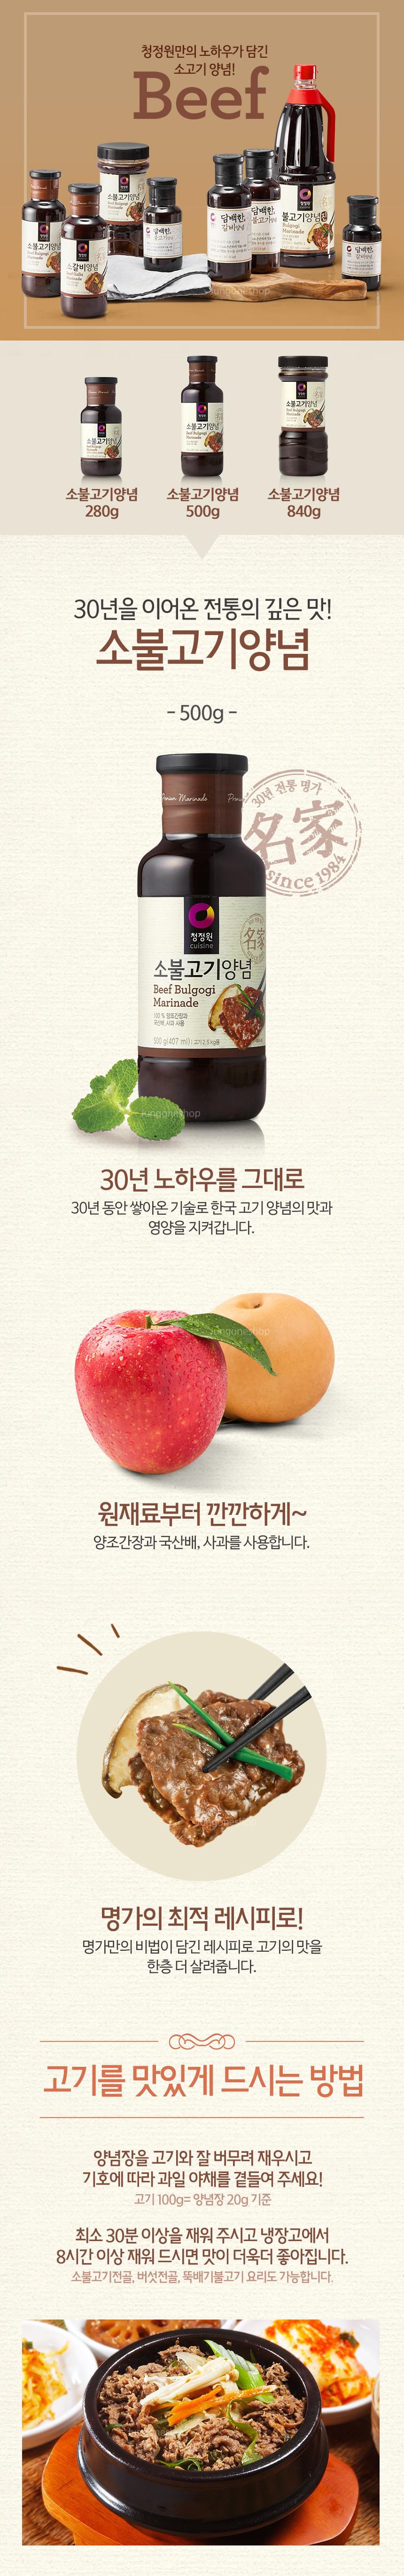 韓國食品-[청정원] 소불고기양념 500g